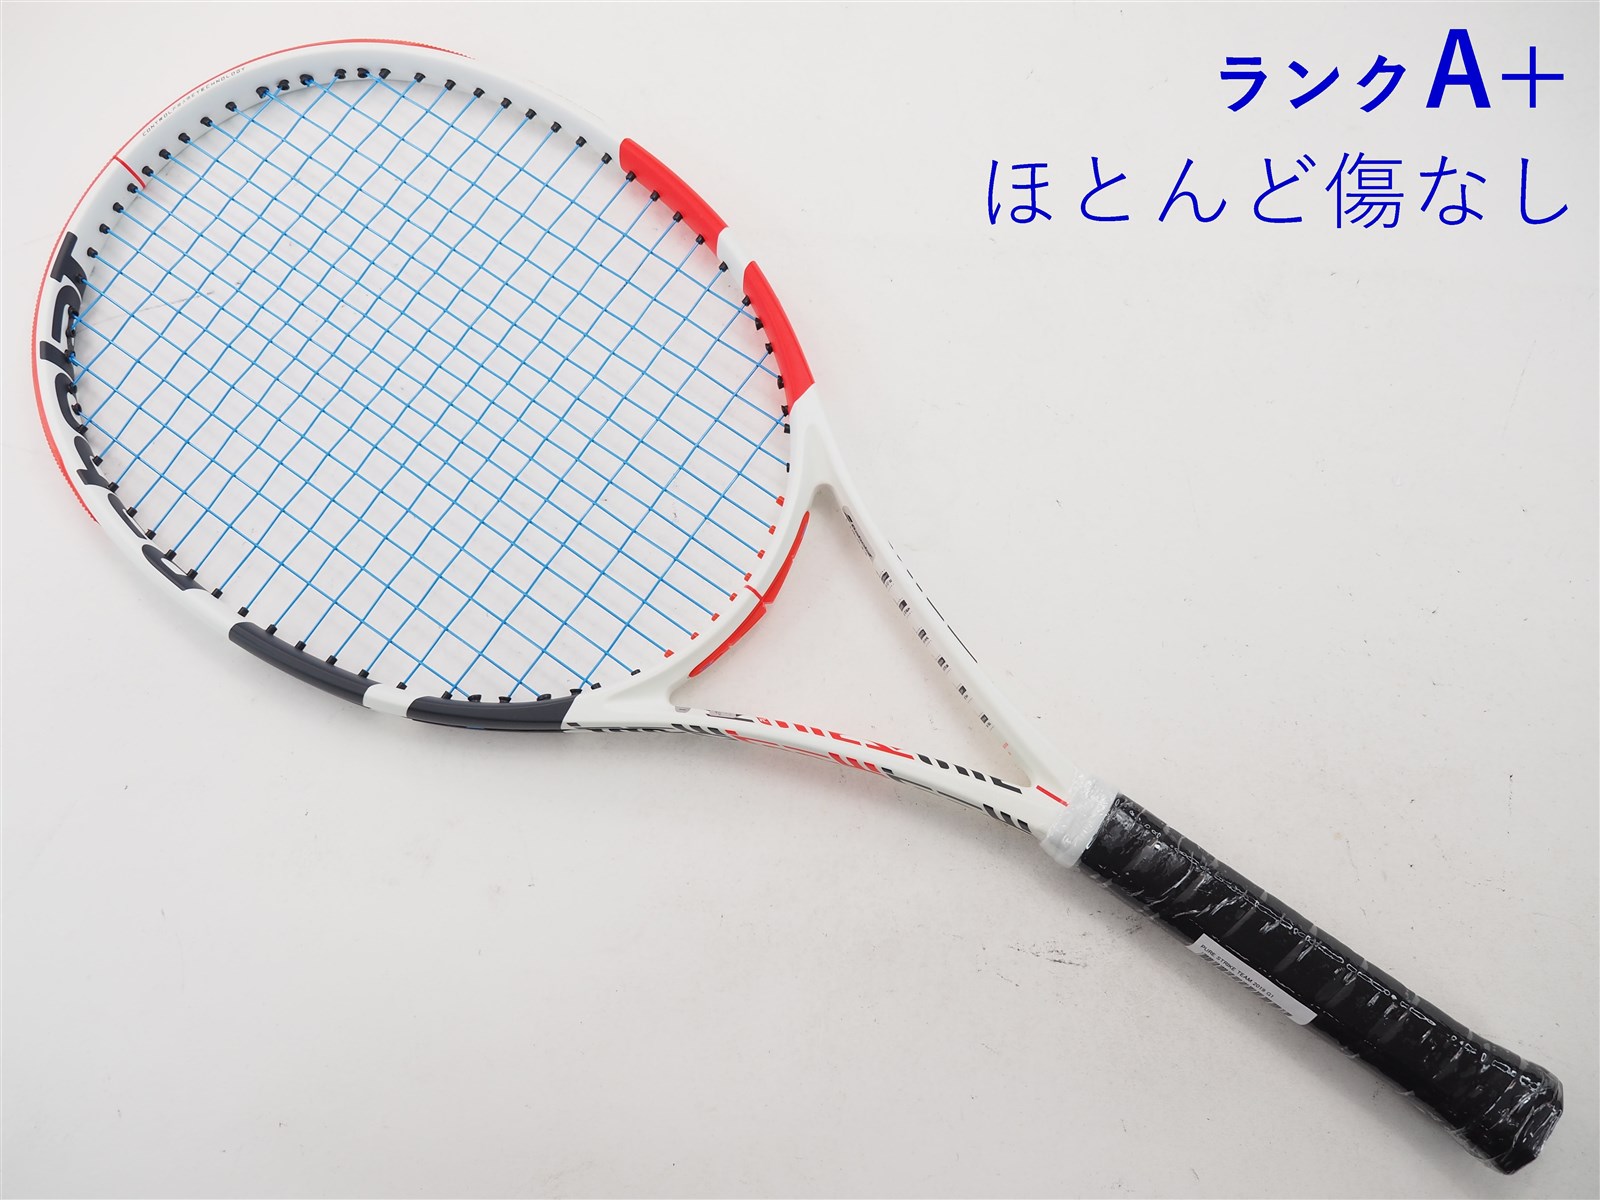 バボラ (Babolat) テニスラケット PURE STRIKE (ピュアストライク) 16 